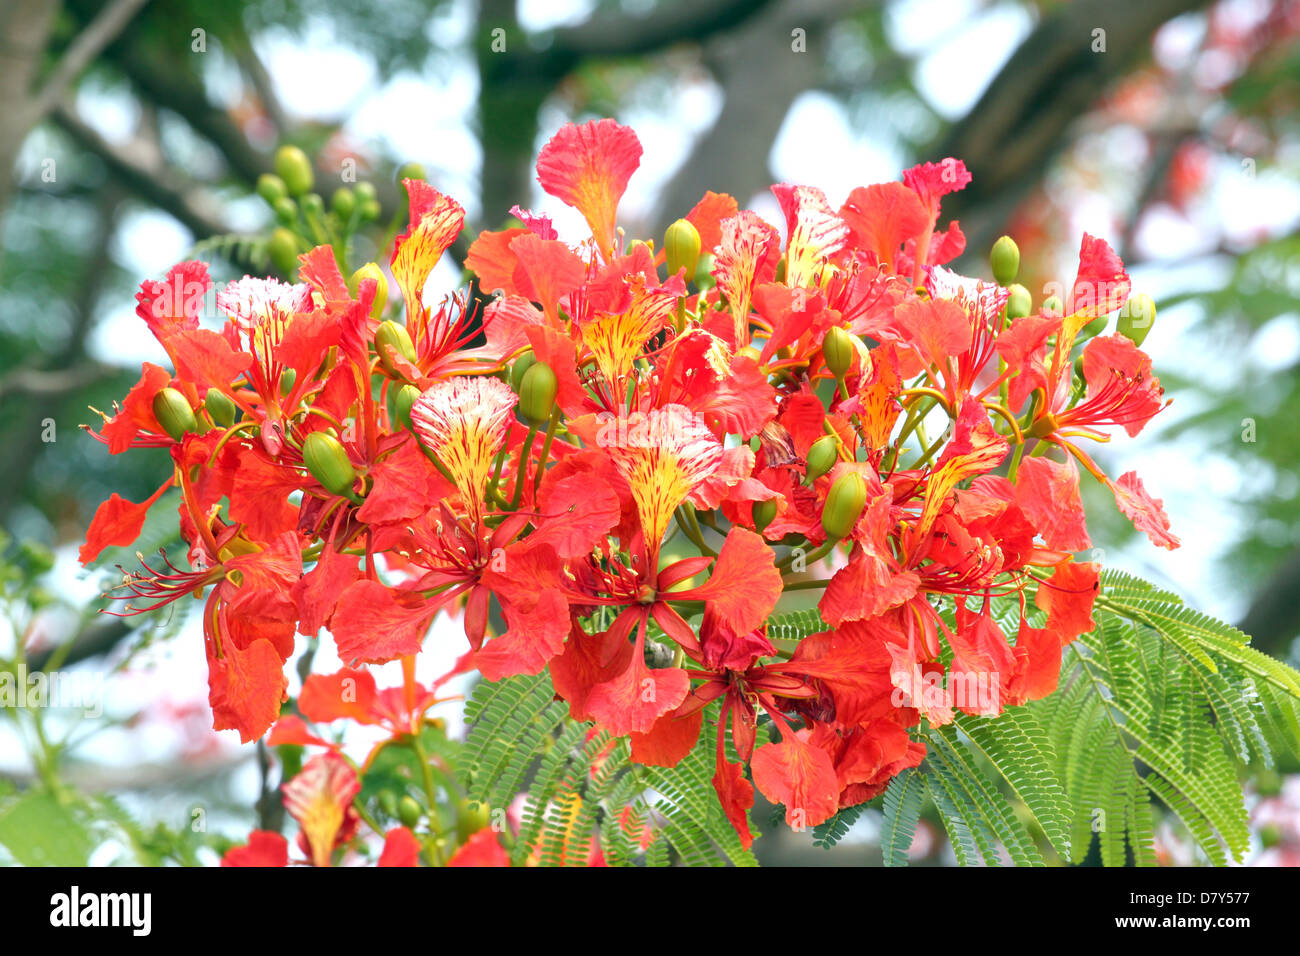 La floraison des fleurs de paon arbre plein rouge rend plus belles. Banque D'Images